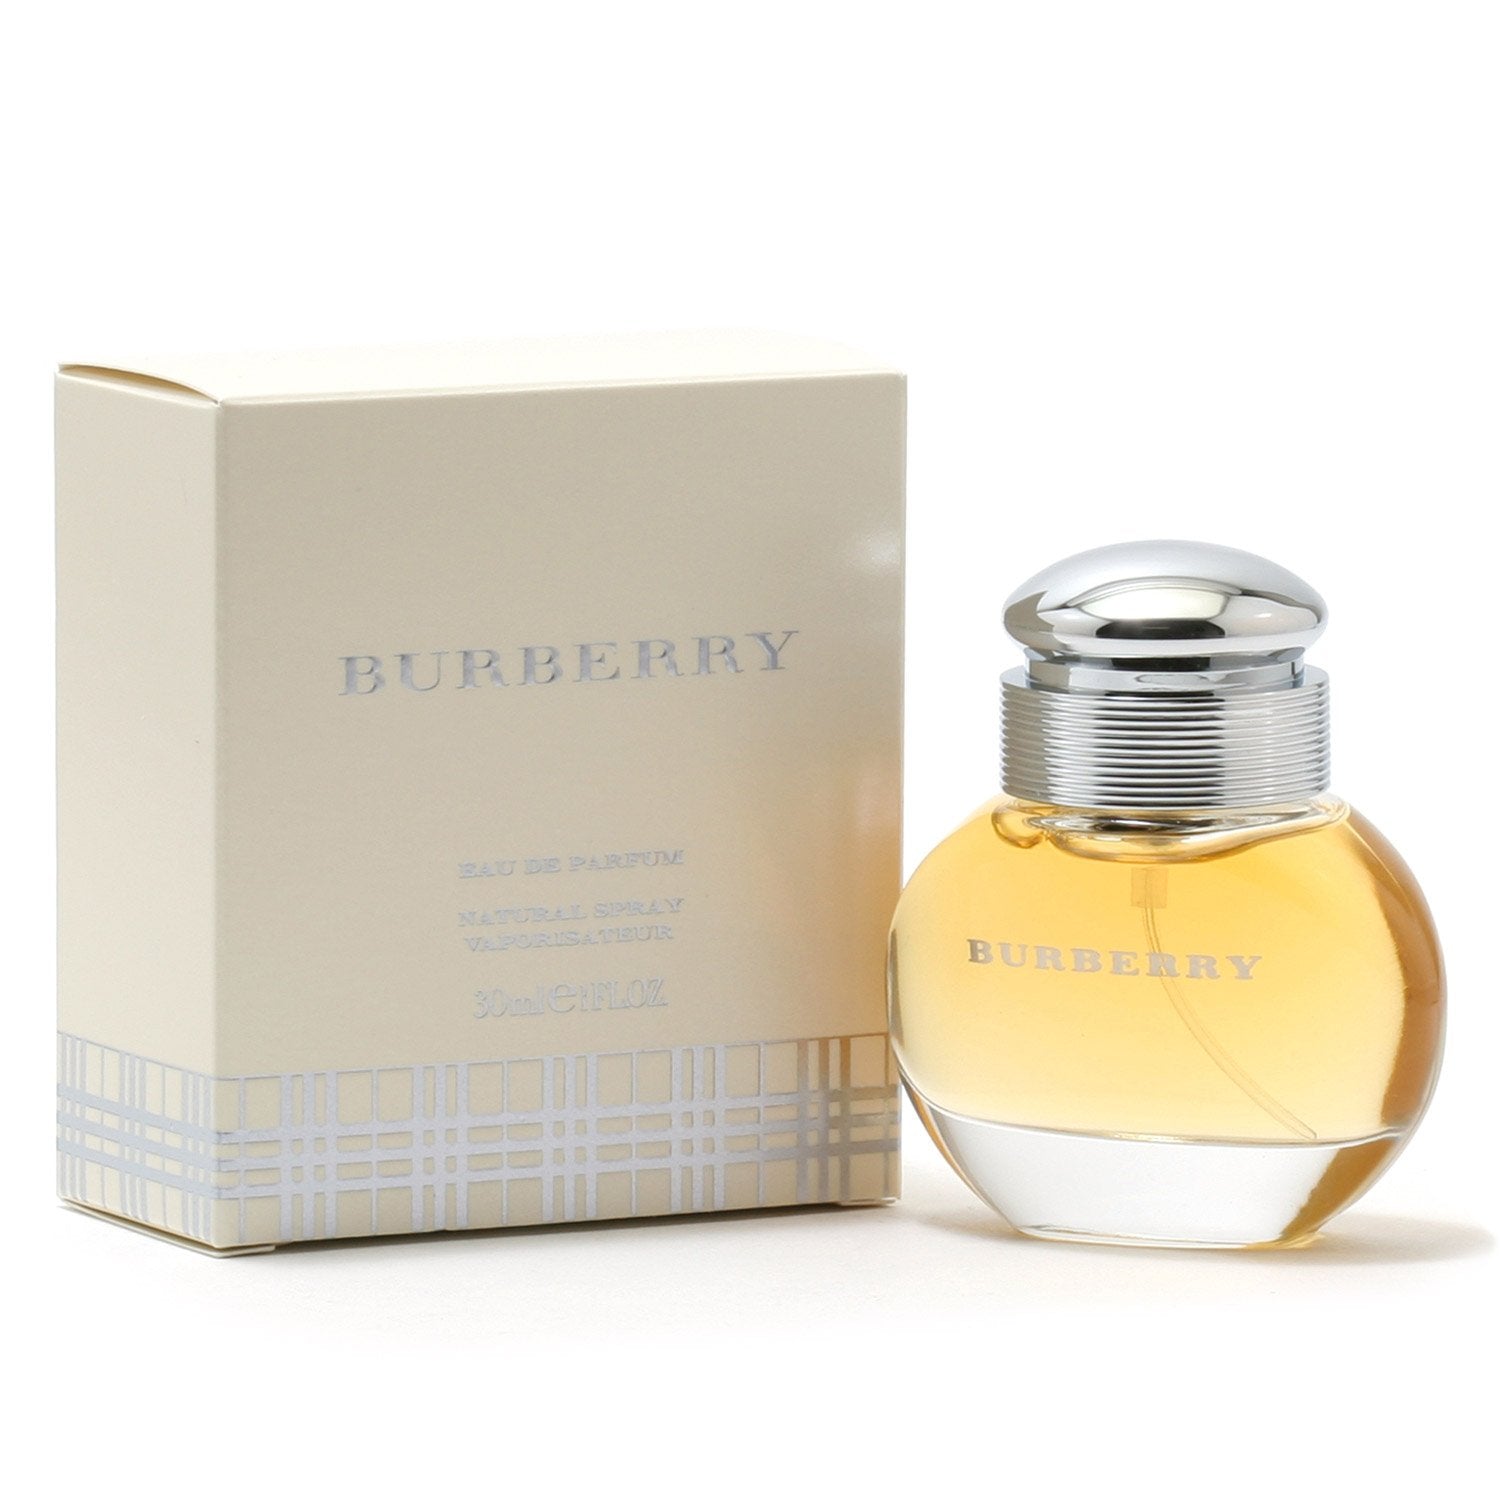 WOMEN – Fragrance EAU DE BURBERRY - Room SPRAY PARFUM FOR CLASSIC